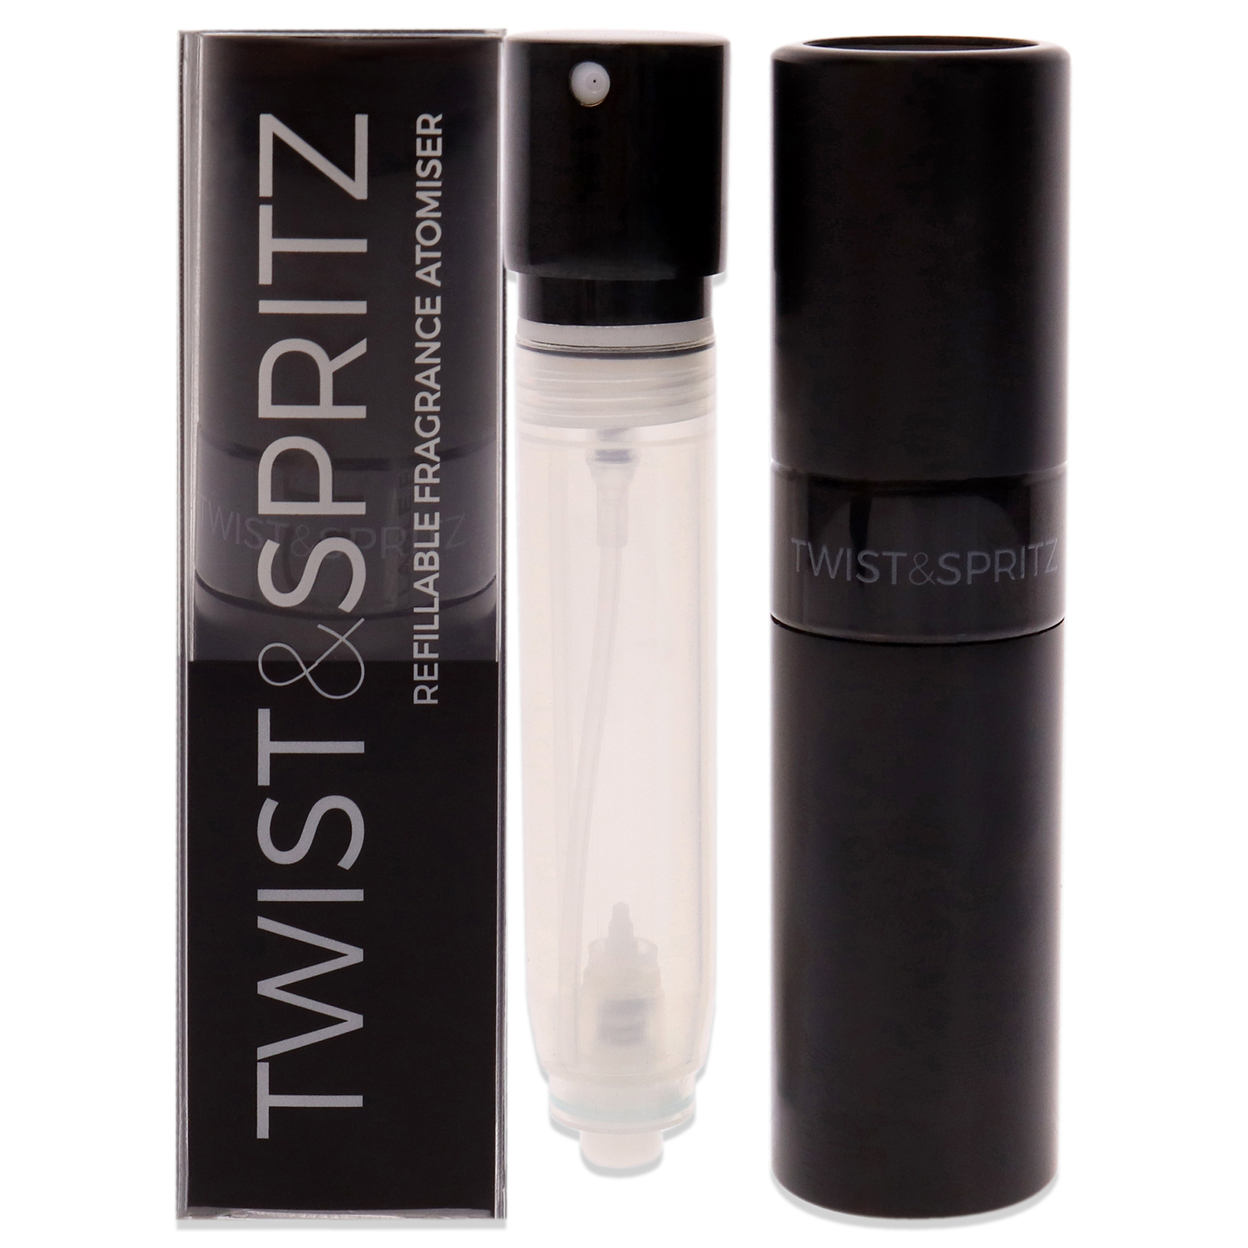 Twist And Spritz Atomiser - Black 8 Ml 8 Ml